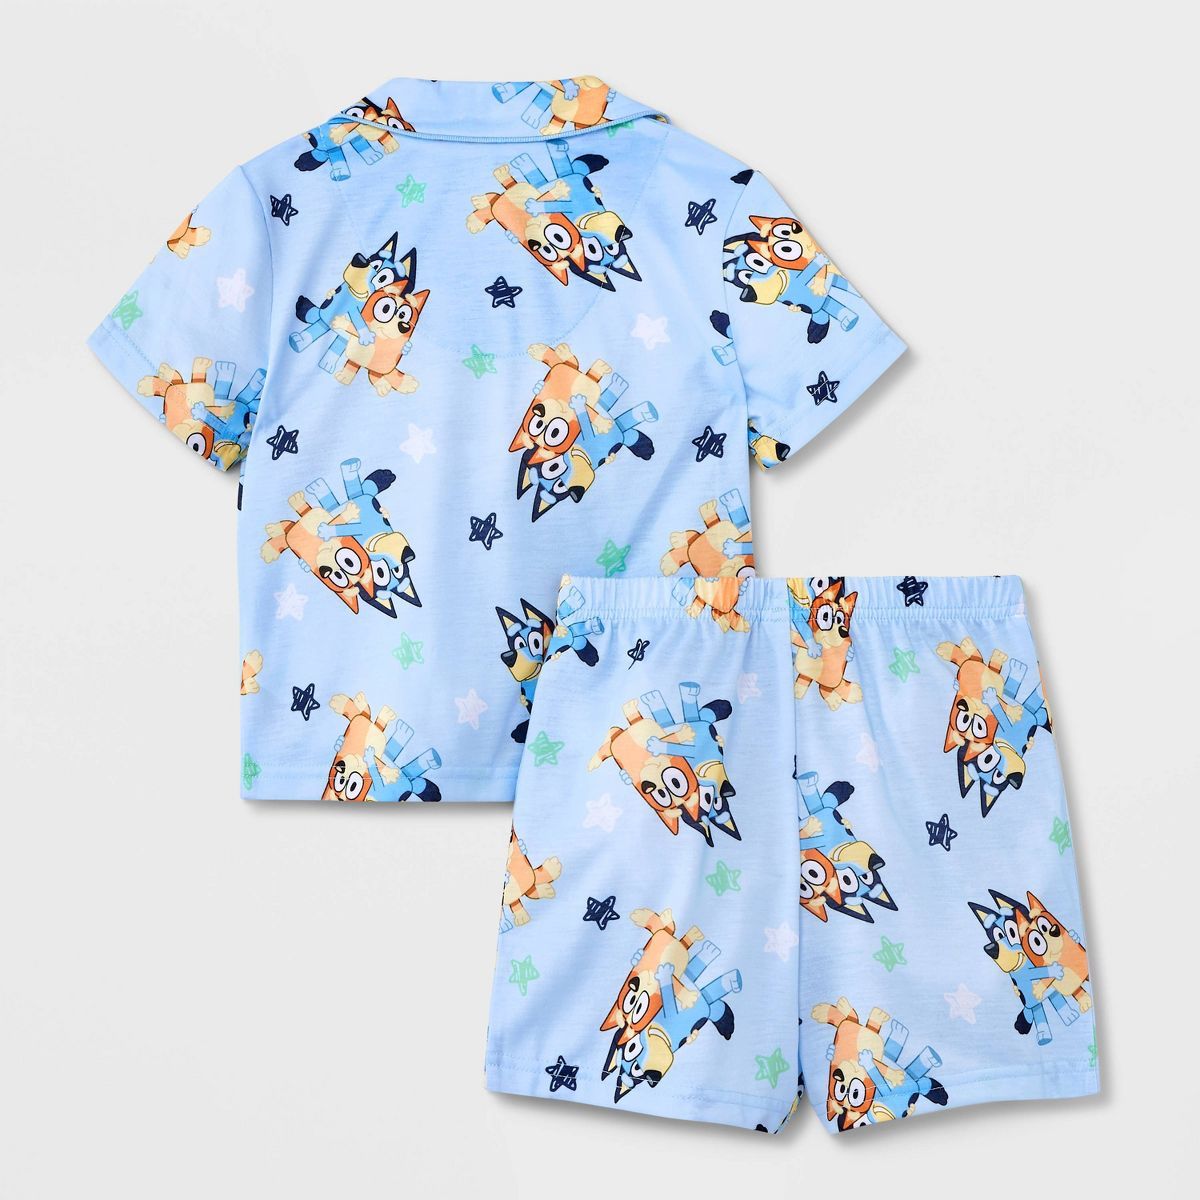 Toddler Boys' 2pc Bluey Pajama Set - Blue | Target